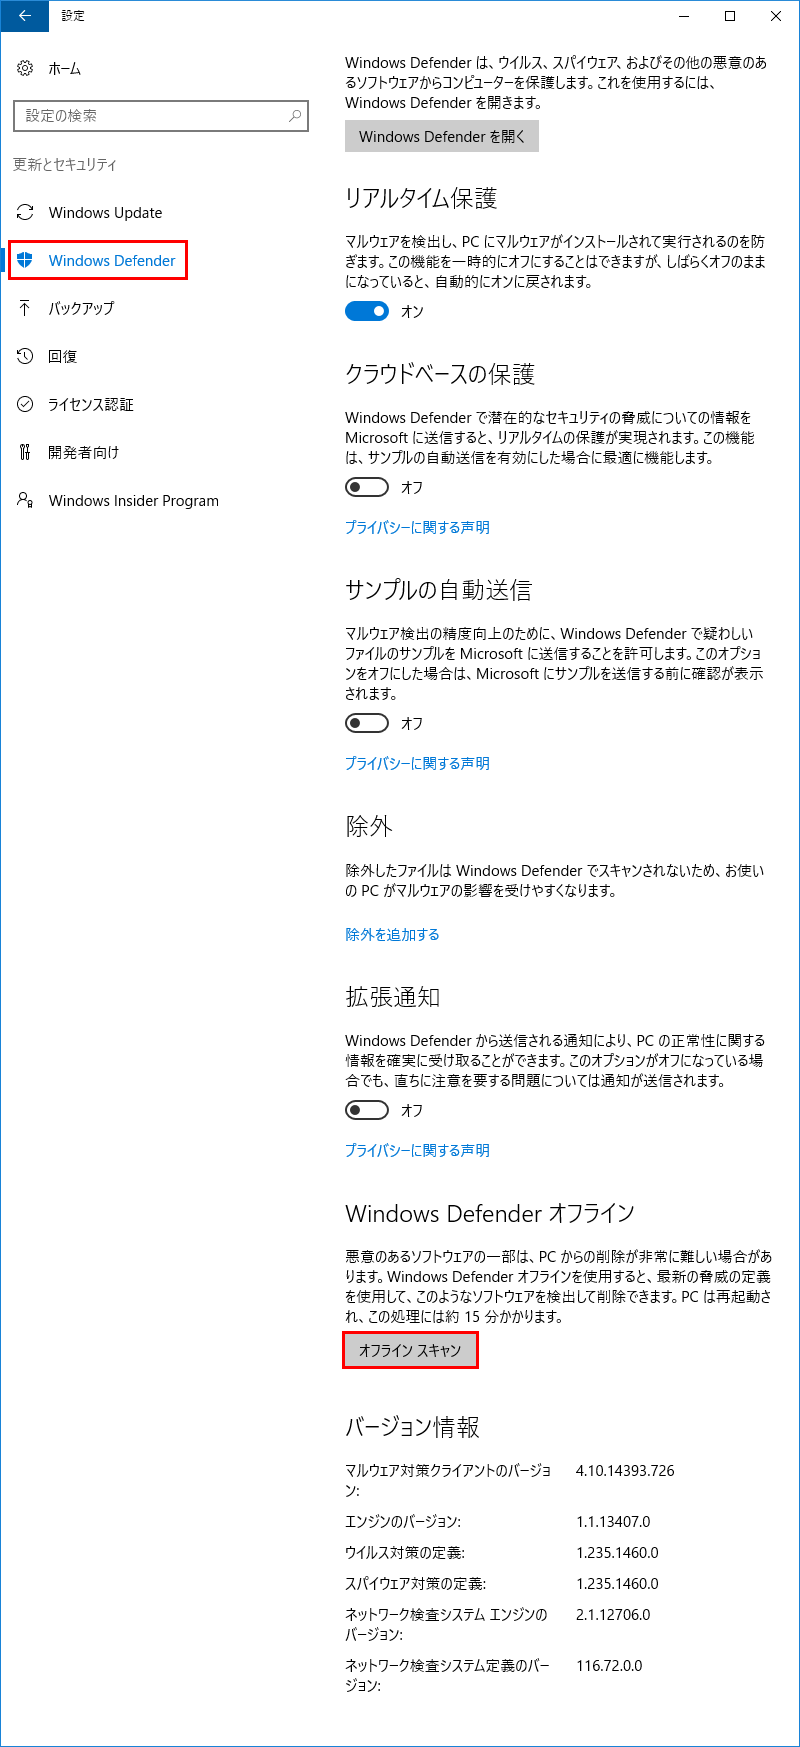 Windows Defender ォピヨィヲ 1